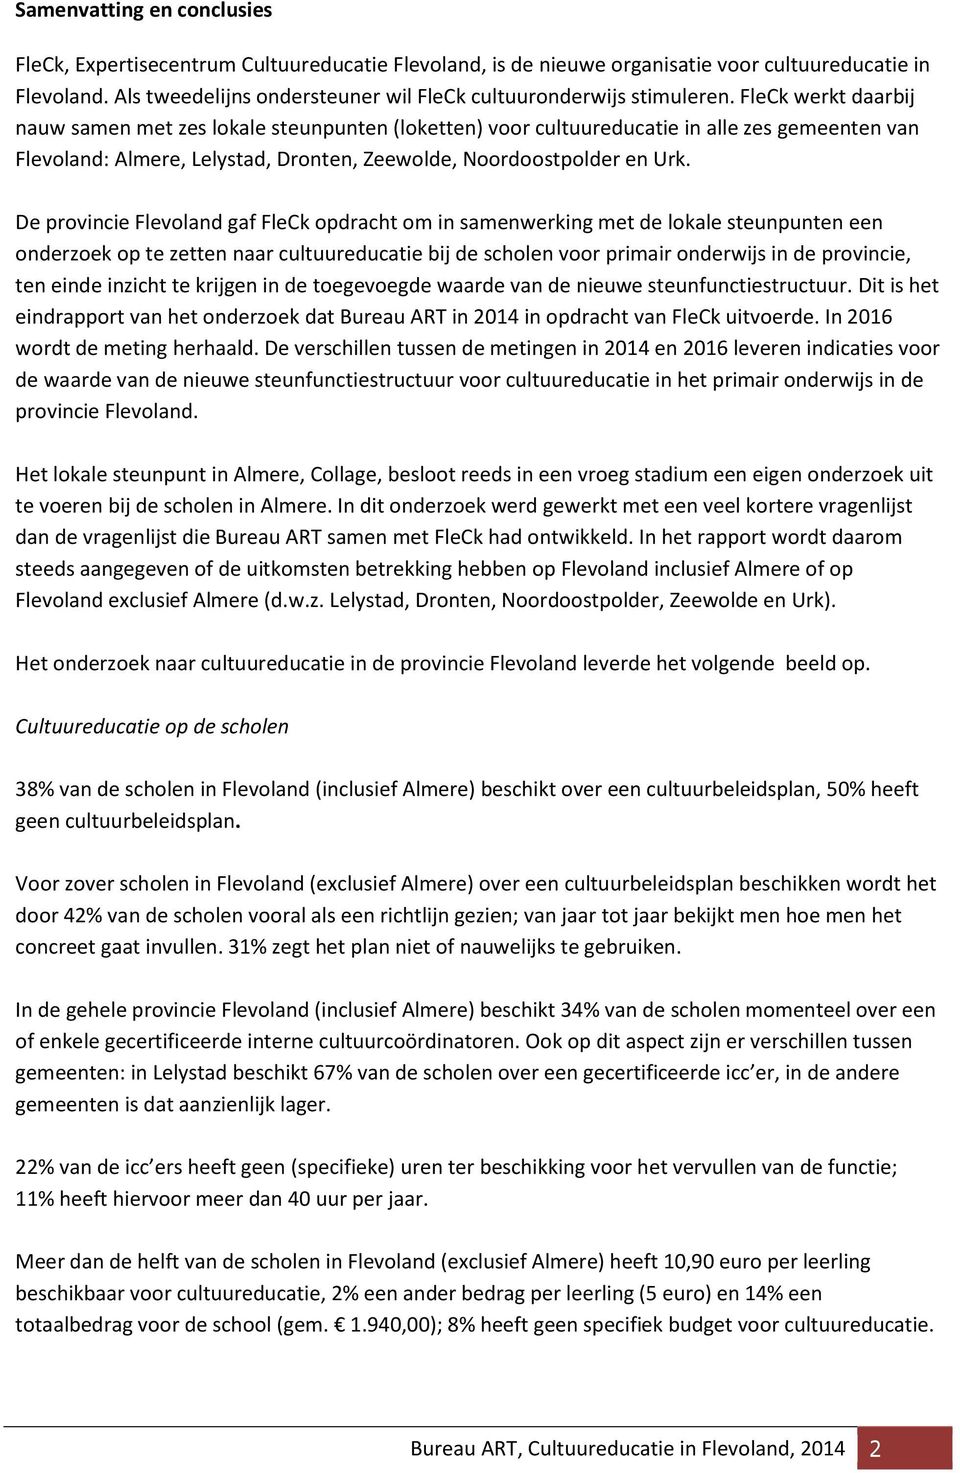 FleCk werkt daarbij nauw samen met zes lokale steunpunten (loketten) voor cultuureducatie in alle zes gemeenten van Flevoland: Almere, Lelystad, Dronten, Zeewolde, Noordoostpolder en Urk.